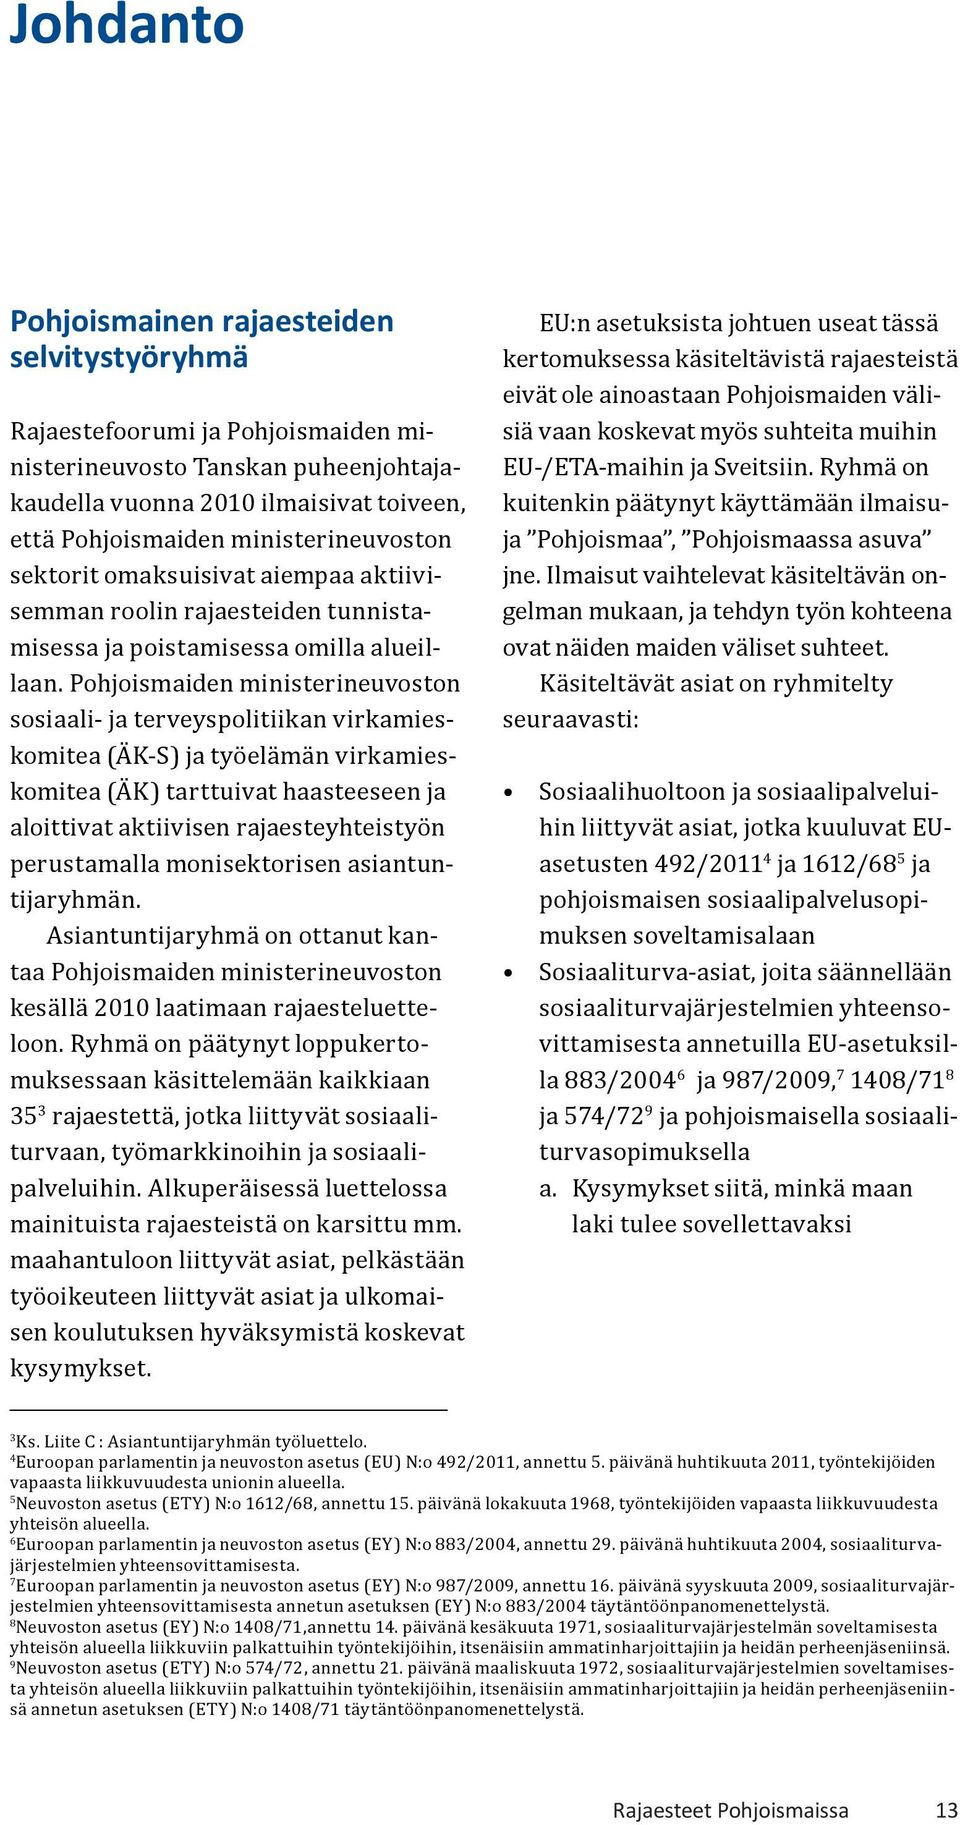 Pohjoismaiden ministerineuvoston sosiaali- ja terveyspolitiikan virkamieskomitea (ÄK-S) ja työelämän virkamieskomitea (ÄK) tarttuivat haasteeseen ja aloittivat aktiivisen rajaesteyhteistyön